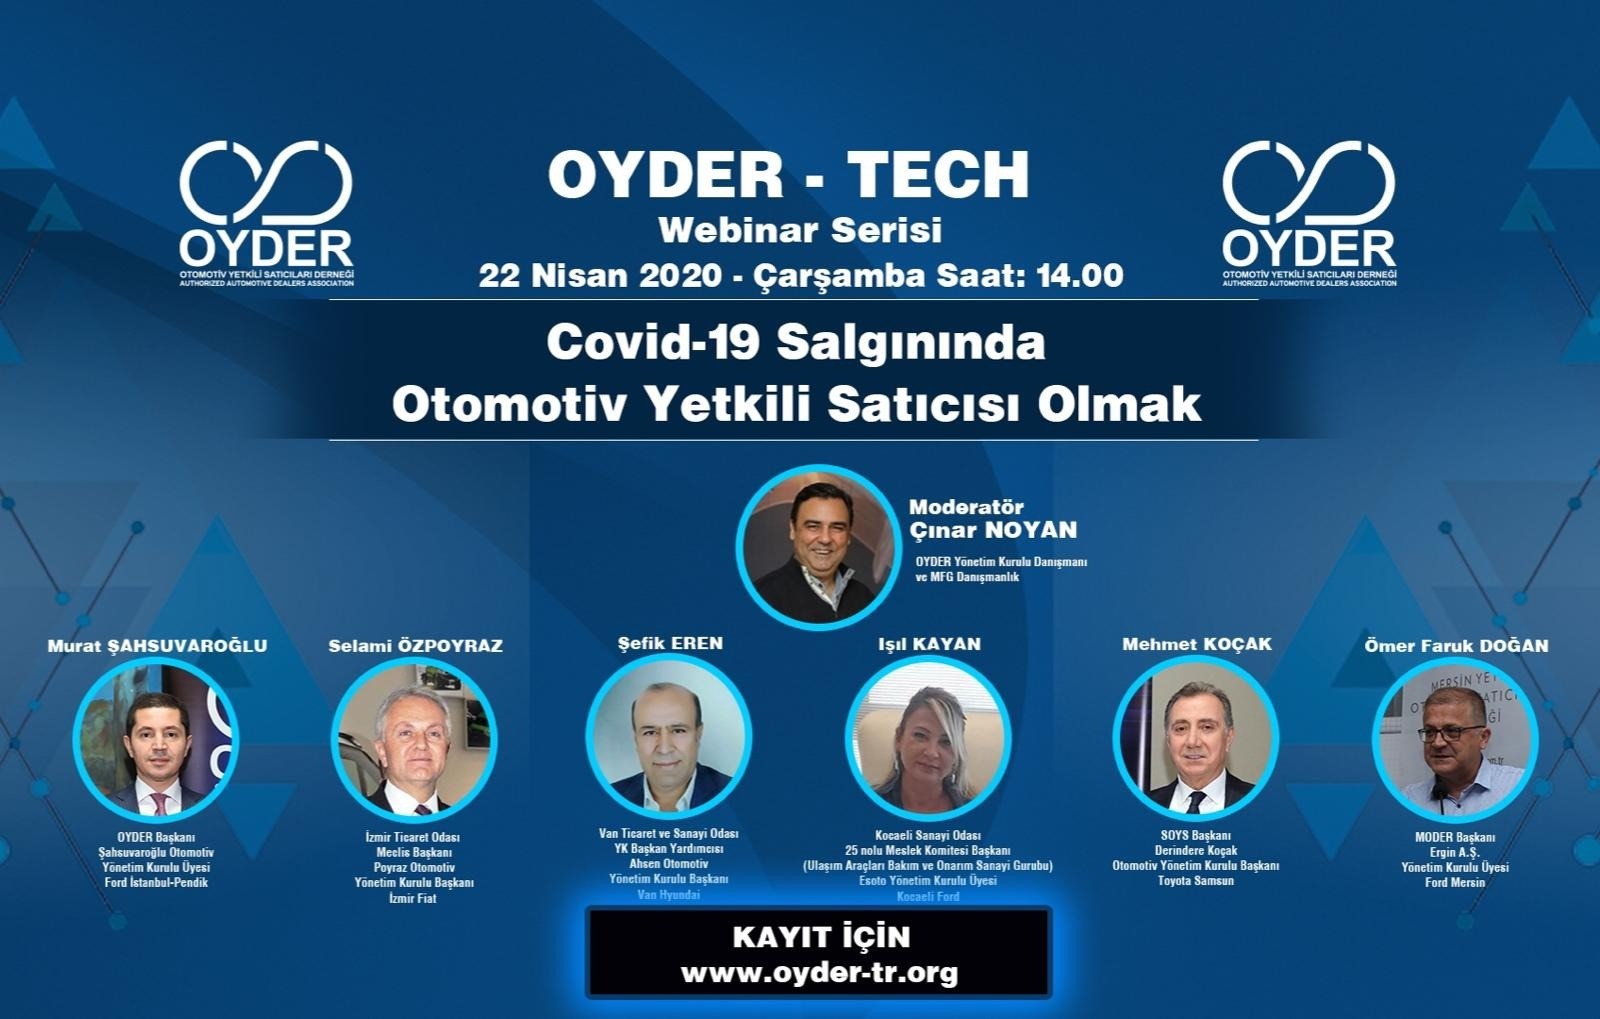 OYDER - TECH Webinar Serisi I. - "Covid-19 Salgınında Otomotiv Yetkili Satıcısı Olmak" Paneli